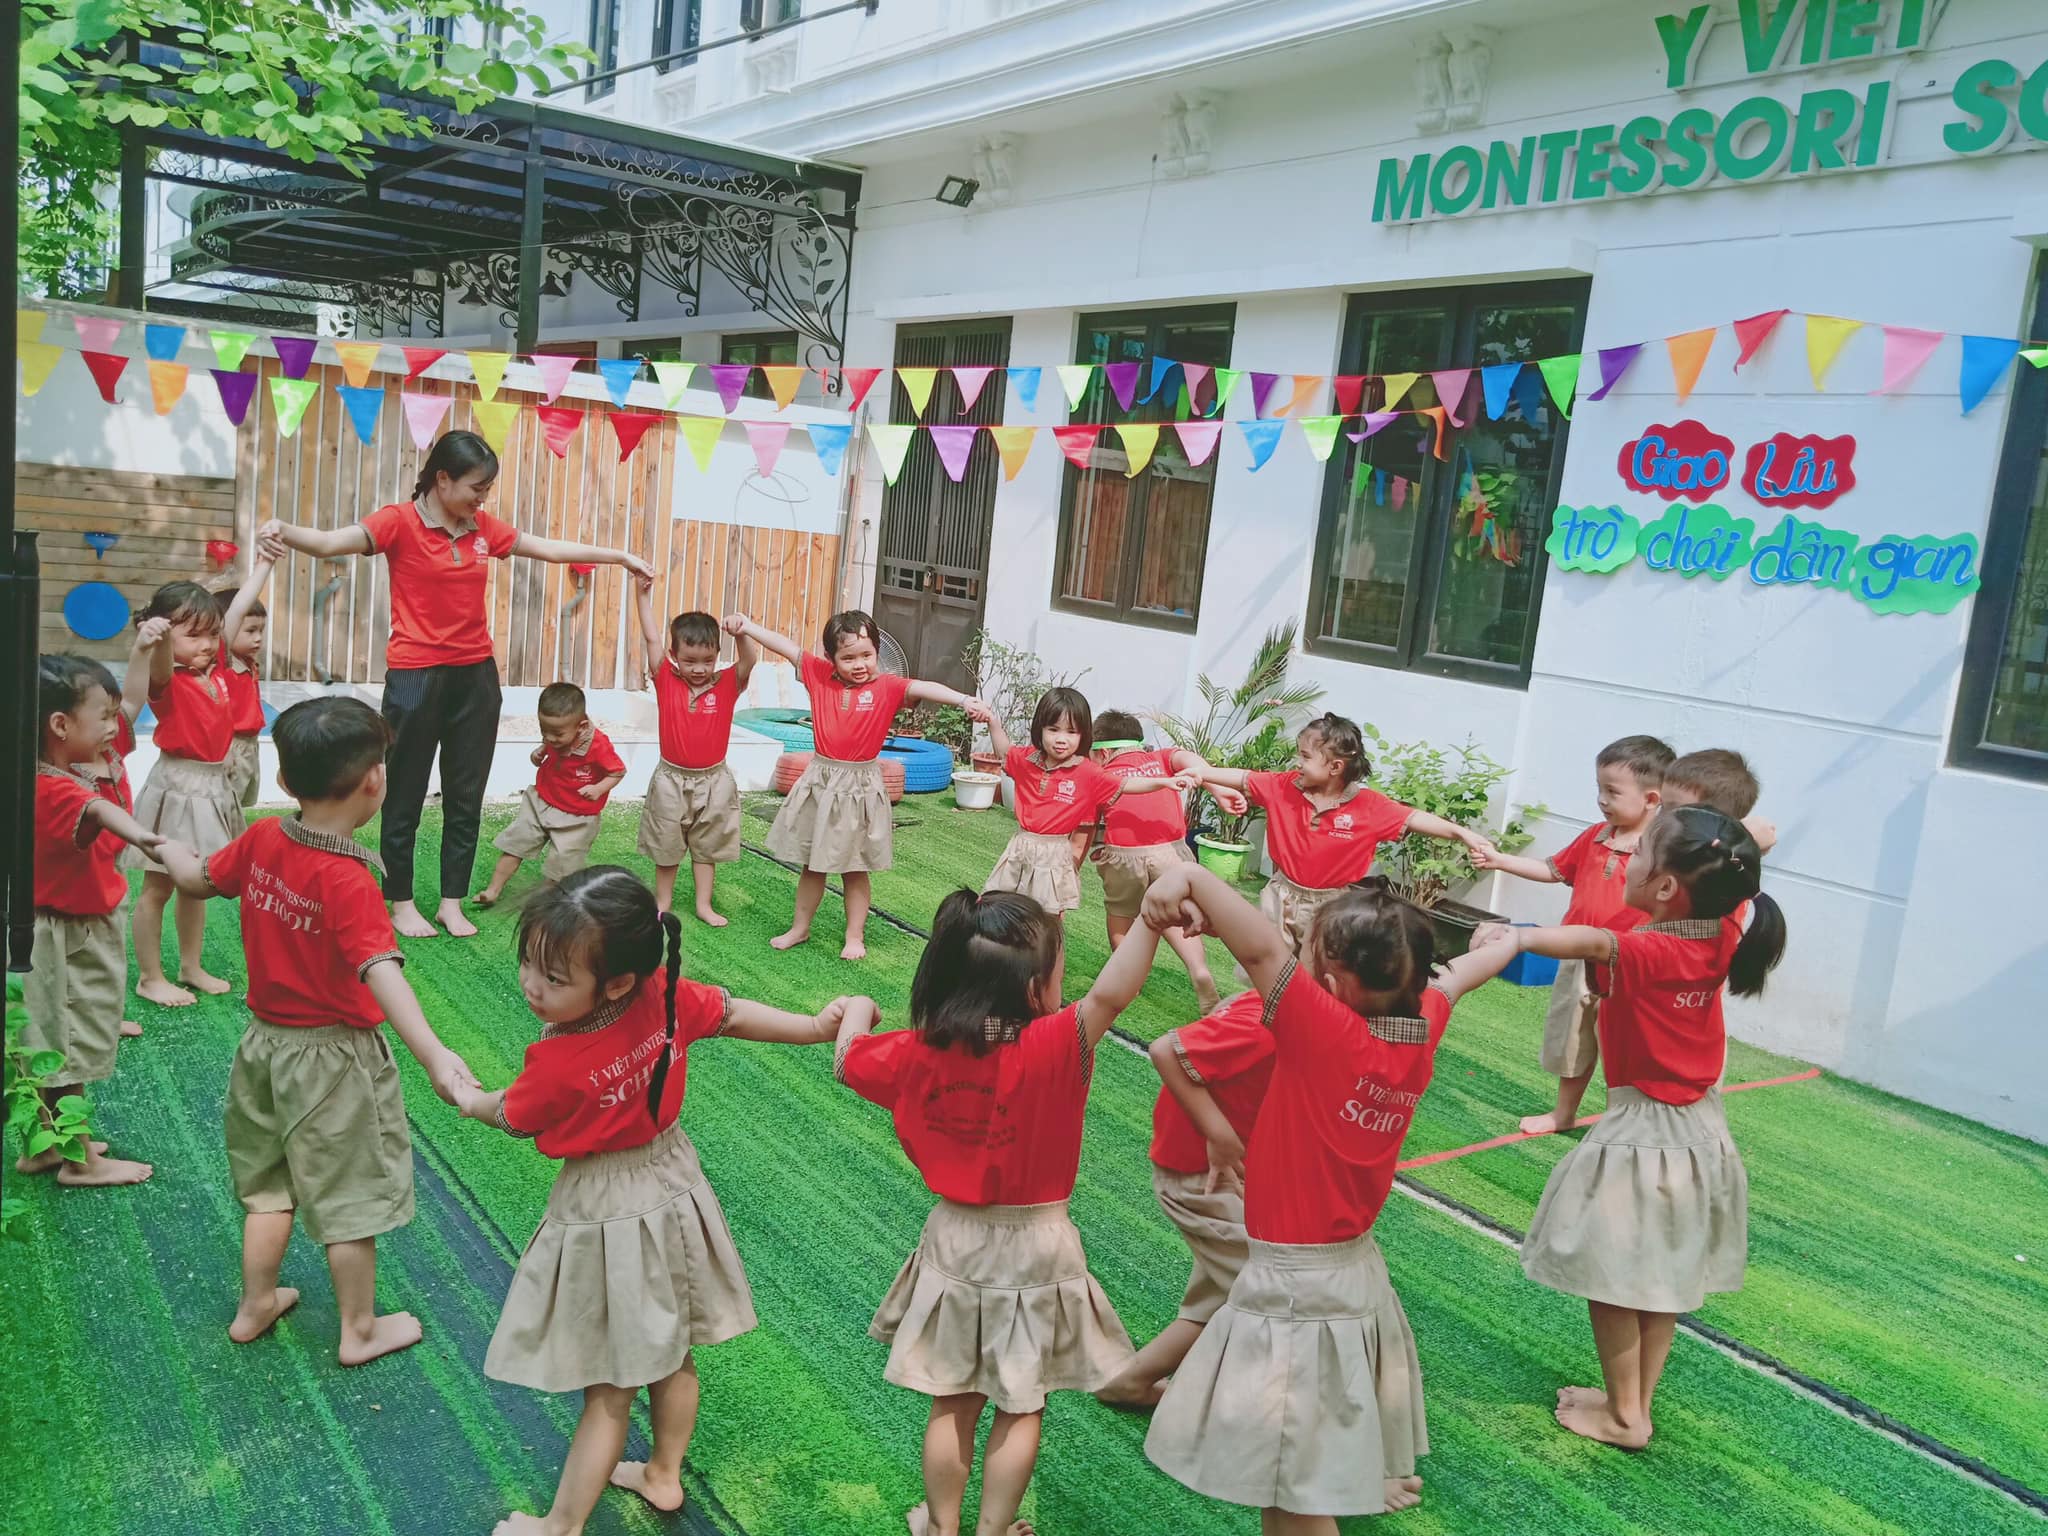 Ý Việt Montessori School ảnh 1